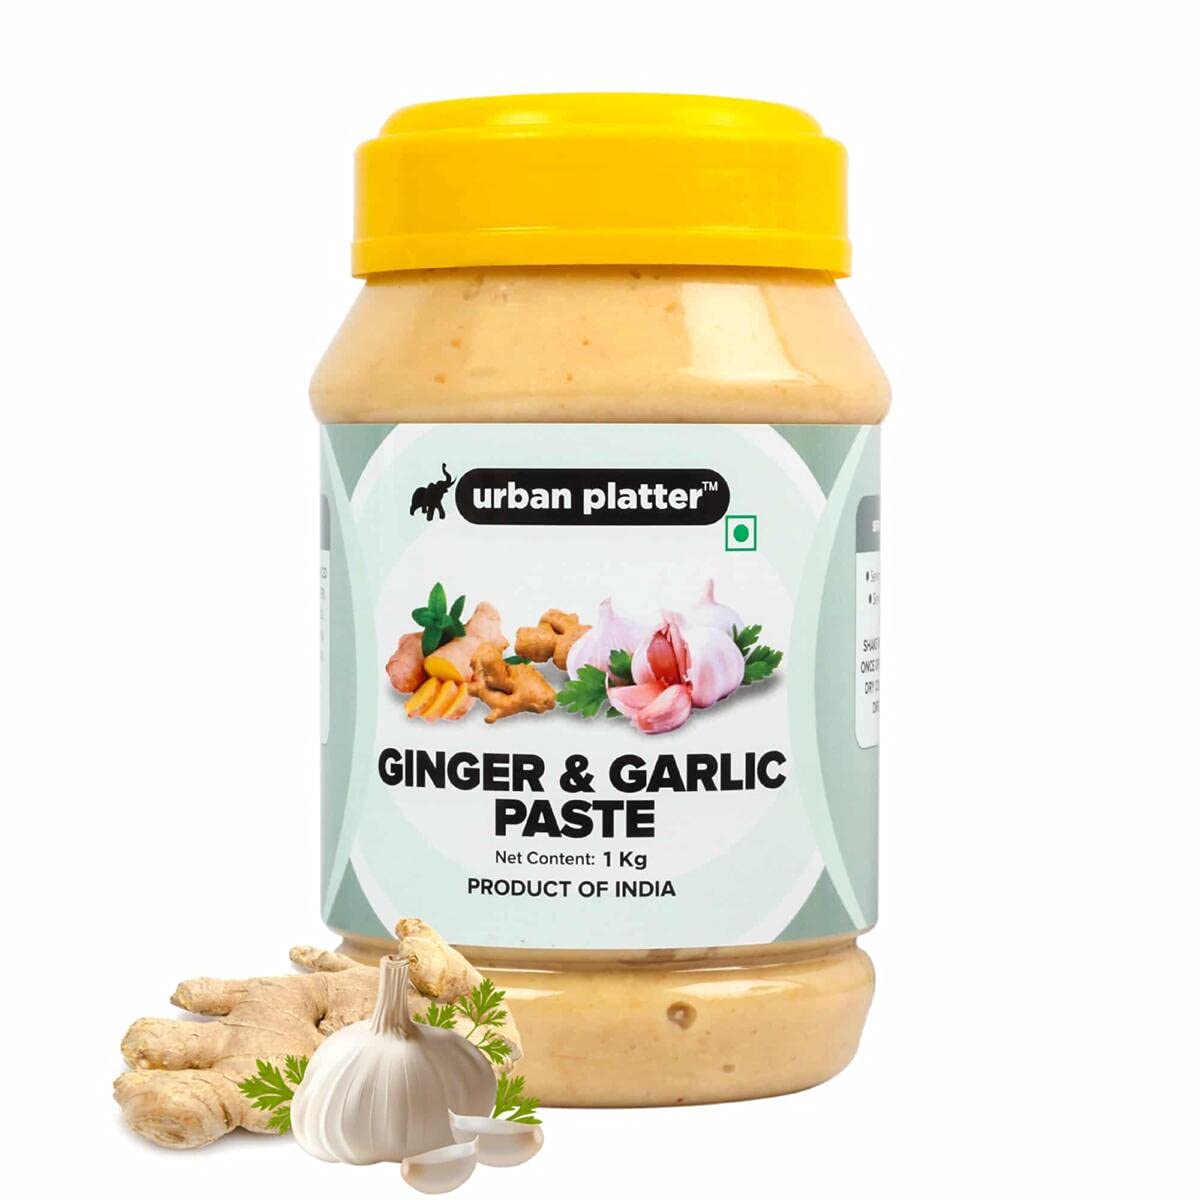 Urban Platter Ginger & Garlic Paste Image